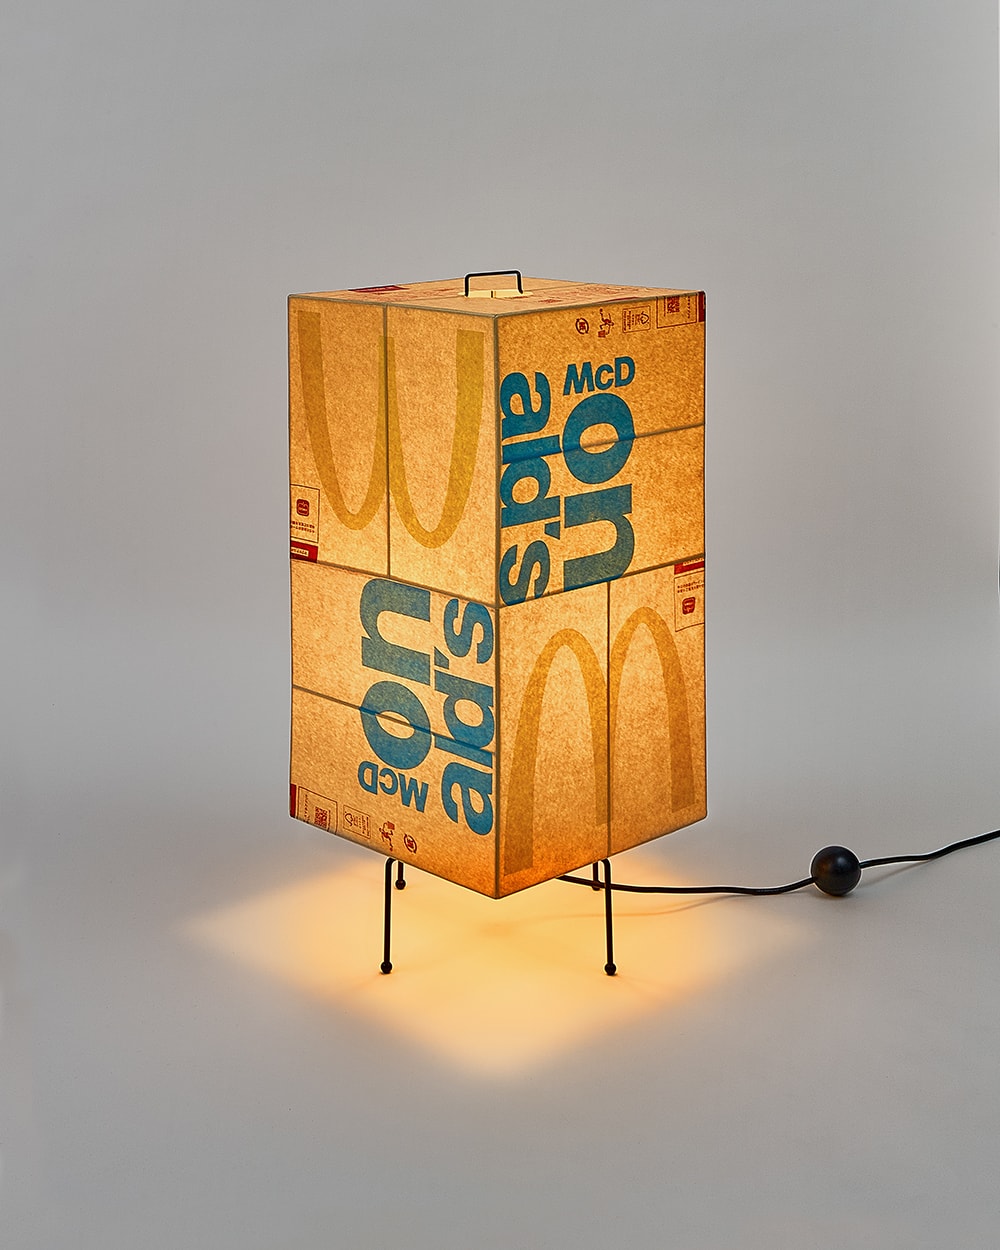 韓國藝術家 Gyu Han Lee 回收使用 McDonald's 紙袋打造燈飾創作系列